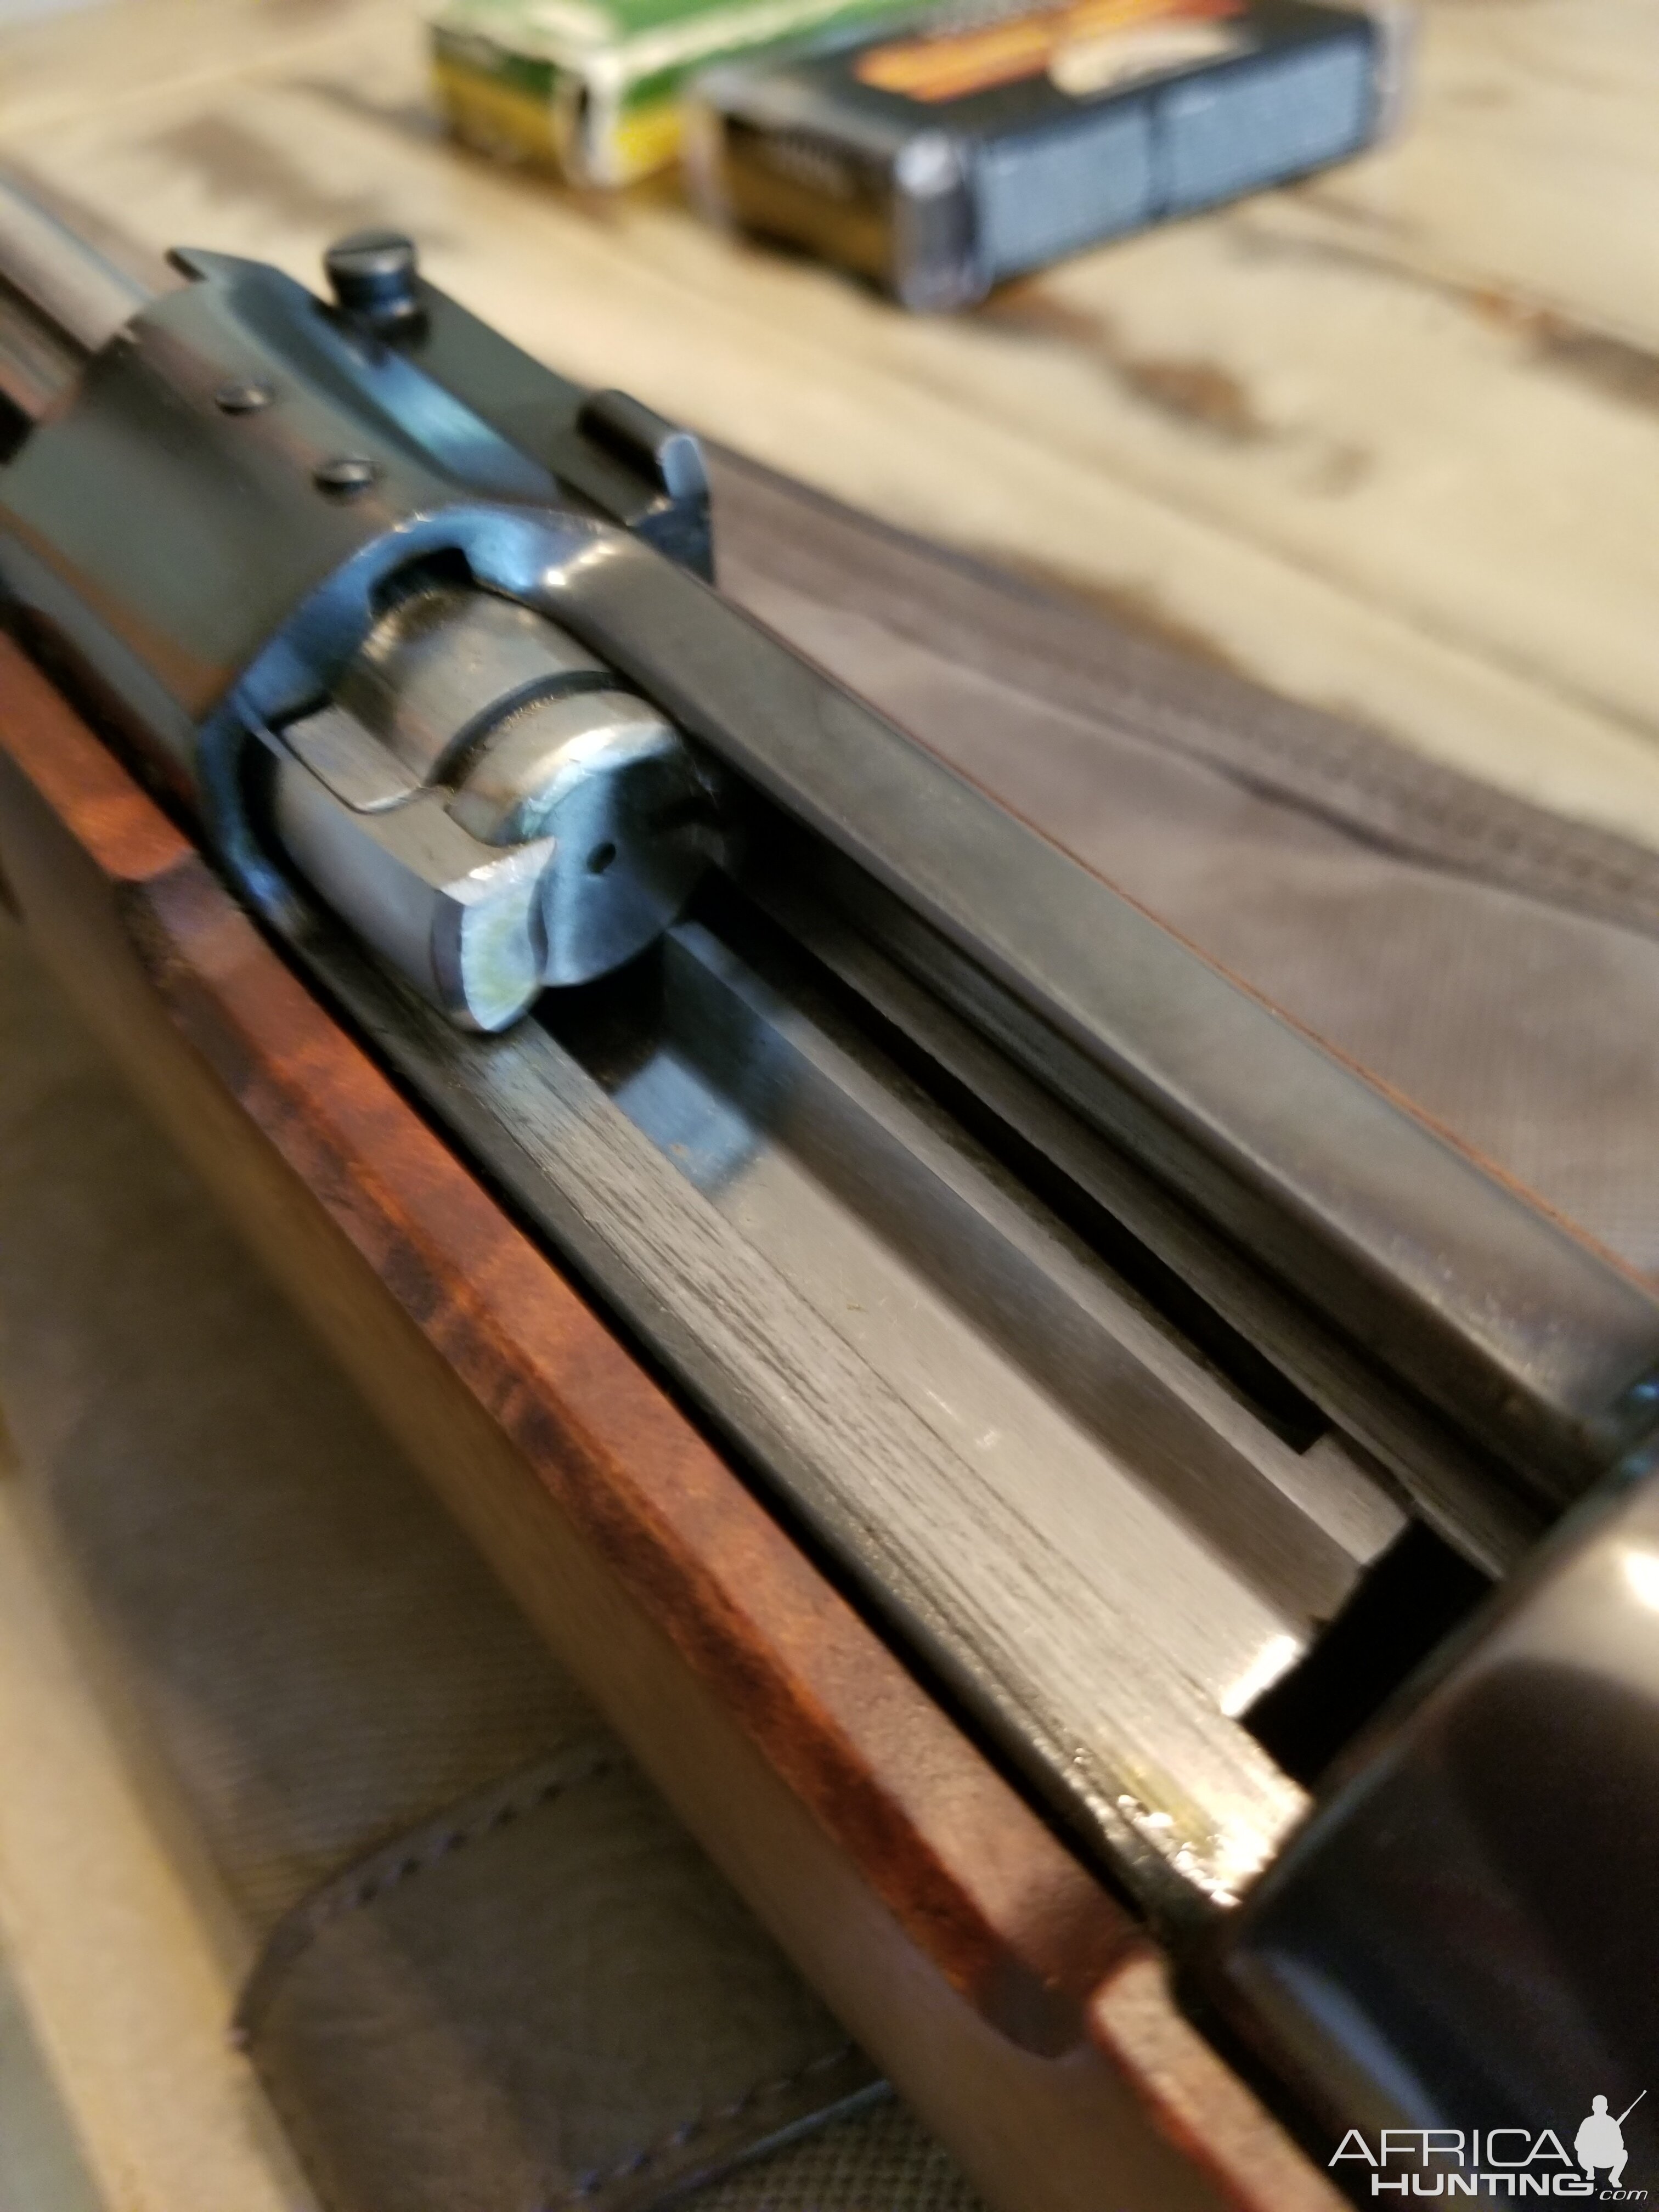 Interarms/Whitworth Mark X 458 Win Rifle